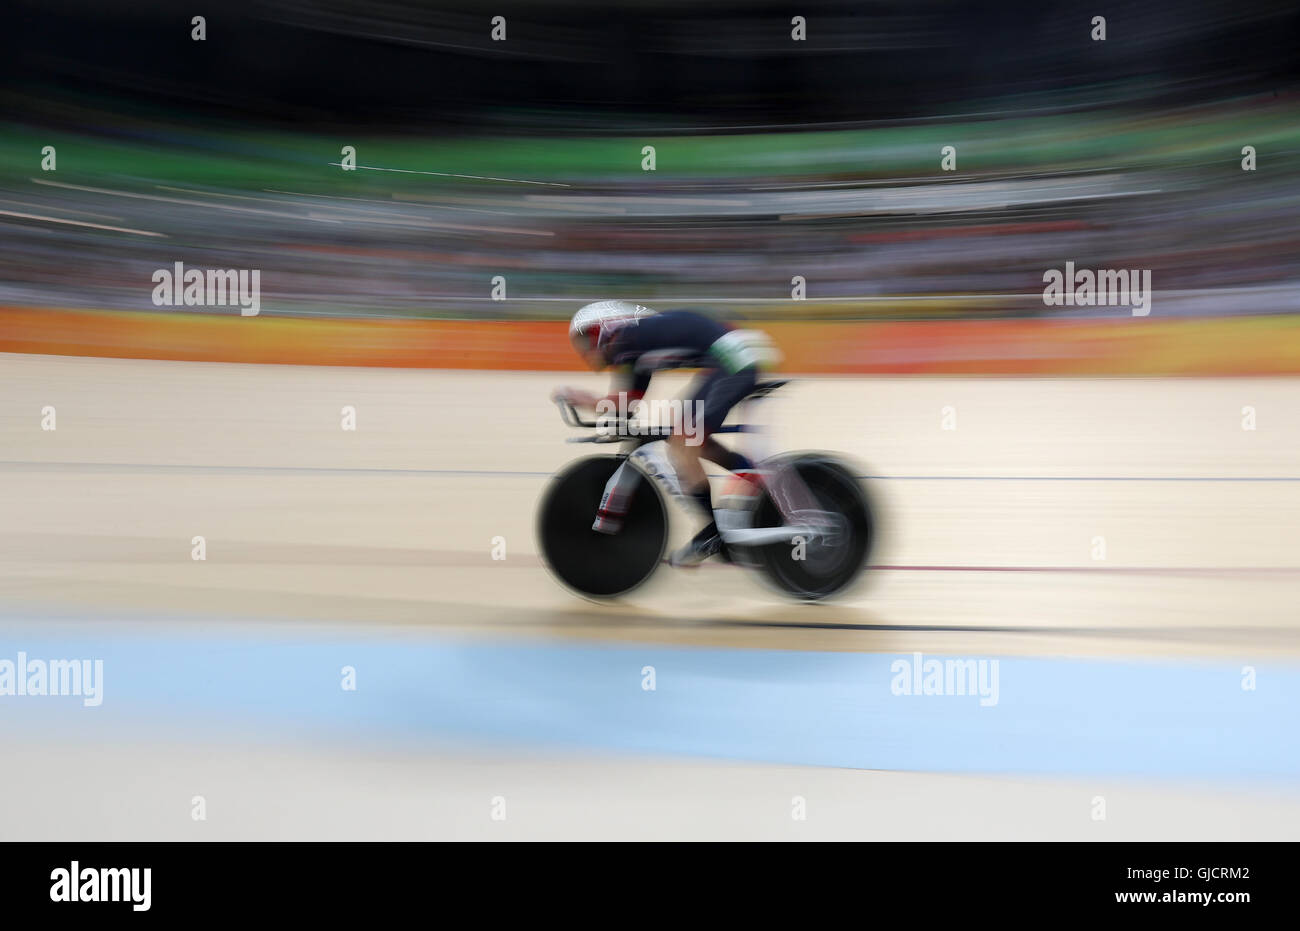 Der Brite Mark Cavendish konkurriert in der Herren Omnium Ausscheidungsrennen in dem Rio Olympic Velodrome am neunten Tag der Olympischen Spiele in Rio, Brasilien. Stockfoto